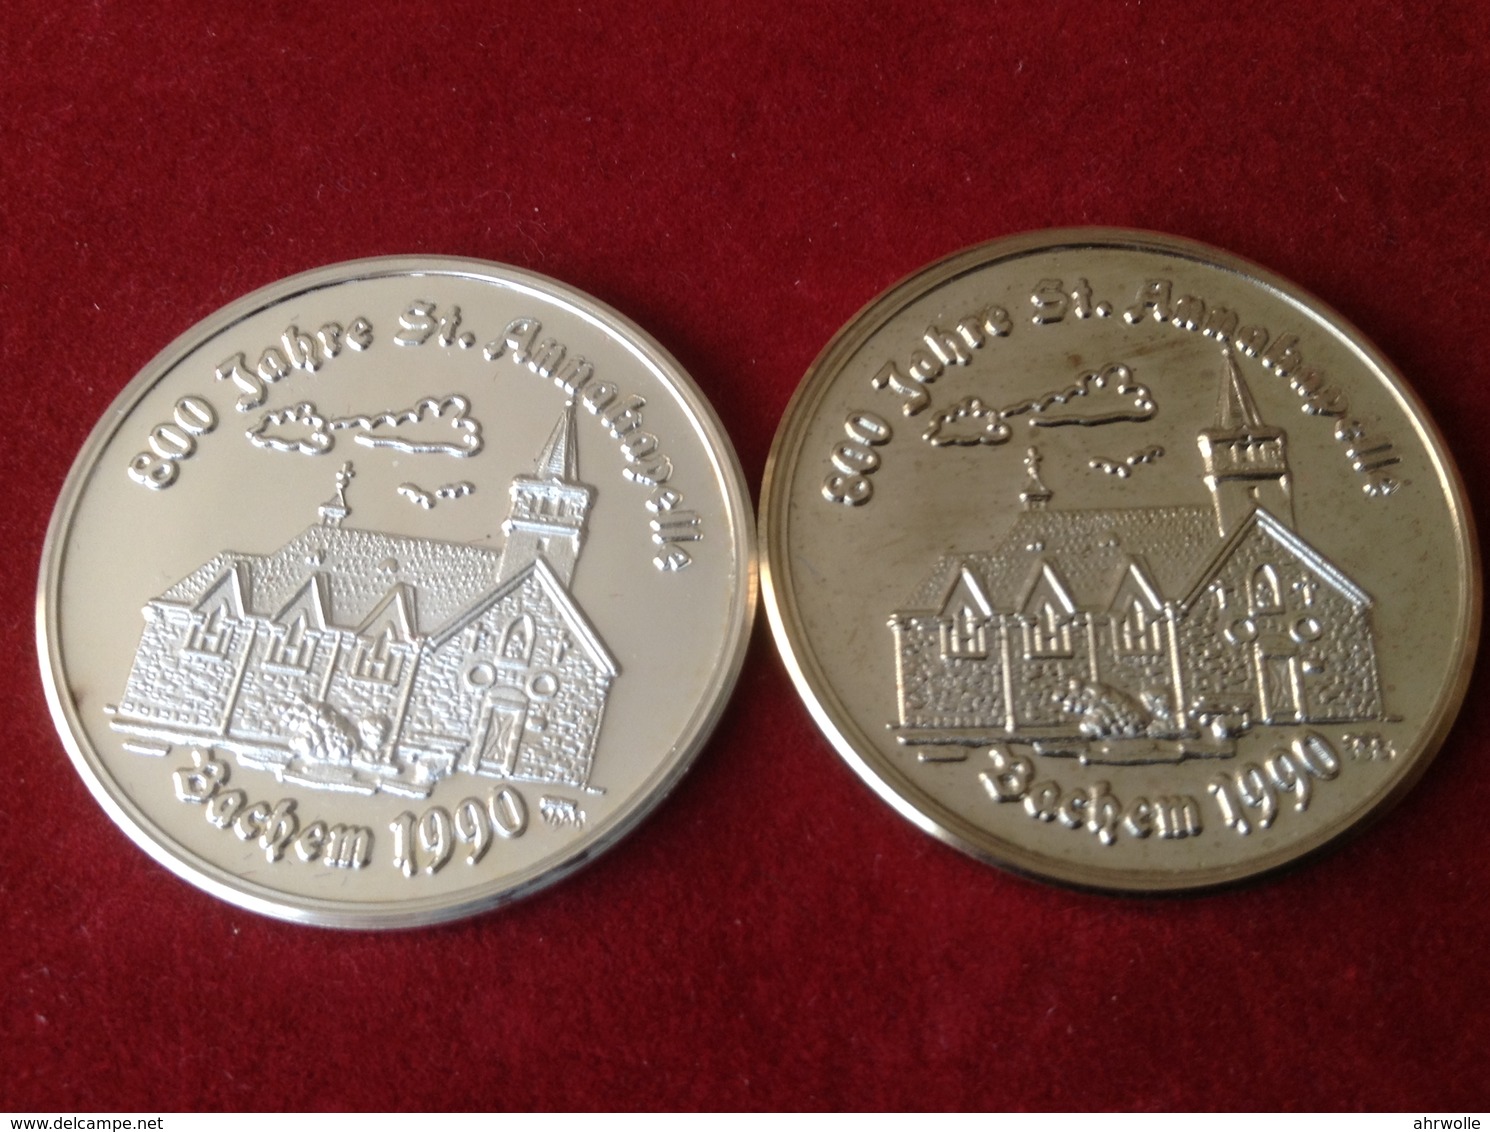 Medaillen Bachem Ahr 800 Jahre Sankt Anna Kapelle 1990 Silber - Souvenirmunten (elongated Coins)